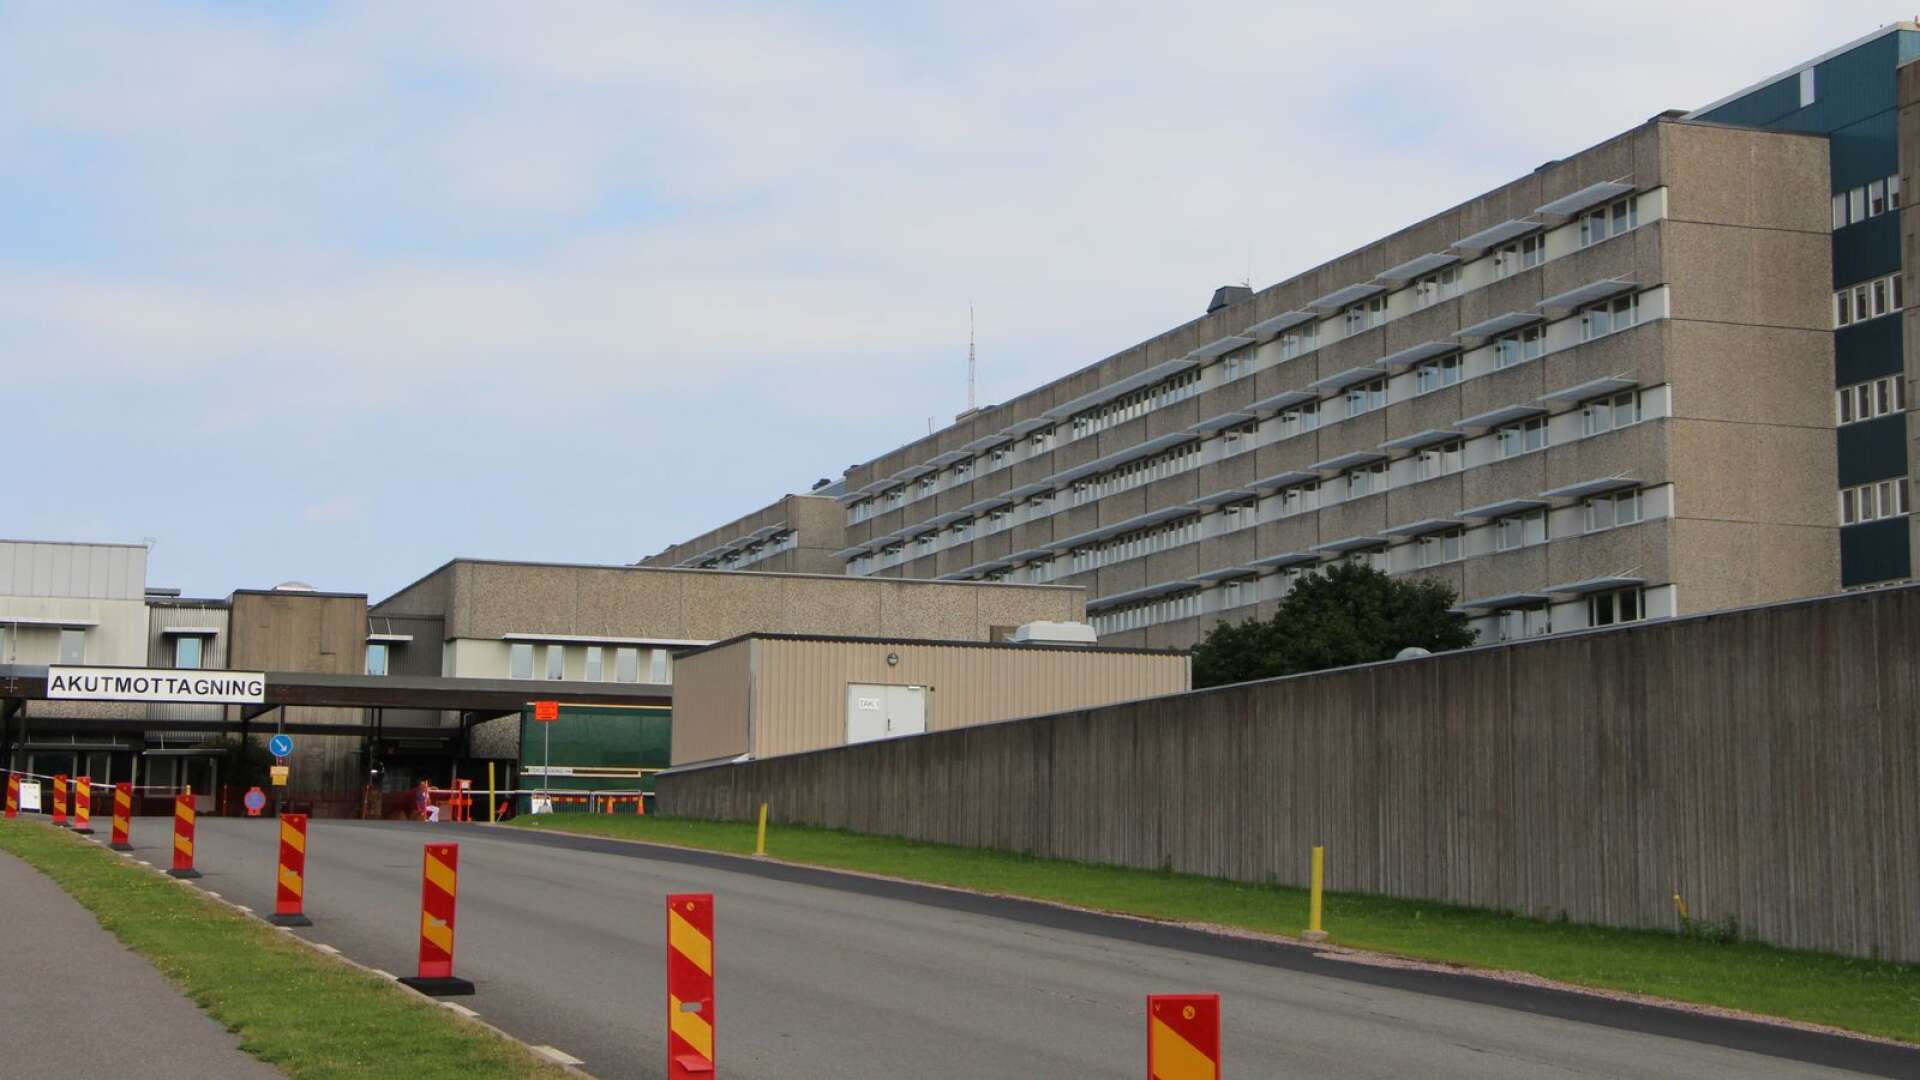 Av de sex personer som får intensivvård för covid-19 i Västra Götaland vårdas två på Skaraborgs sjukhus i Skövde.